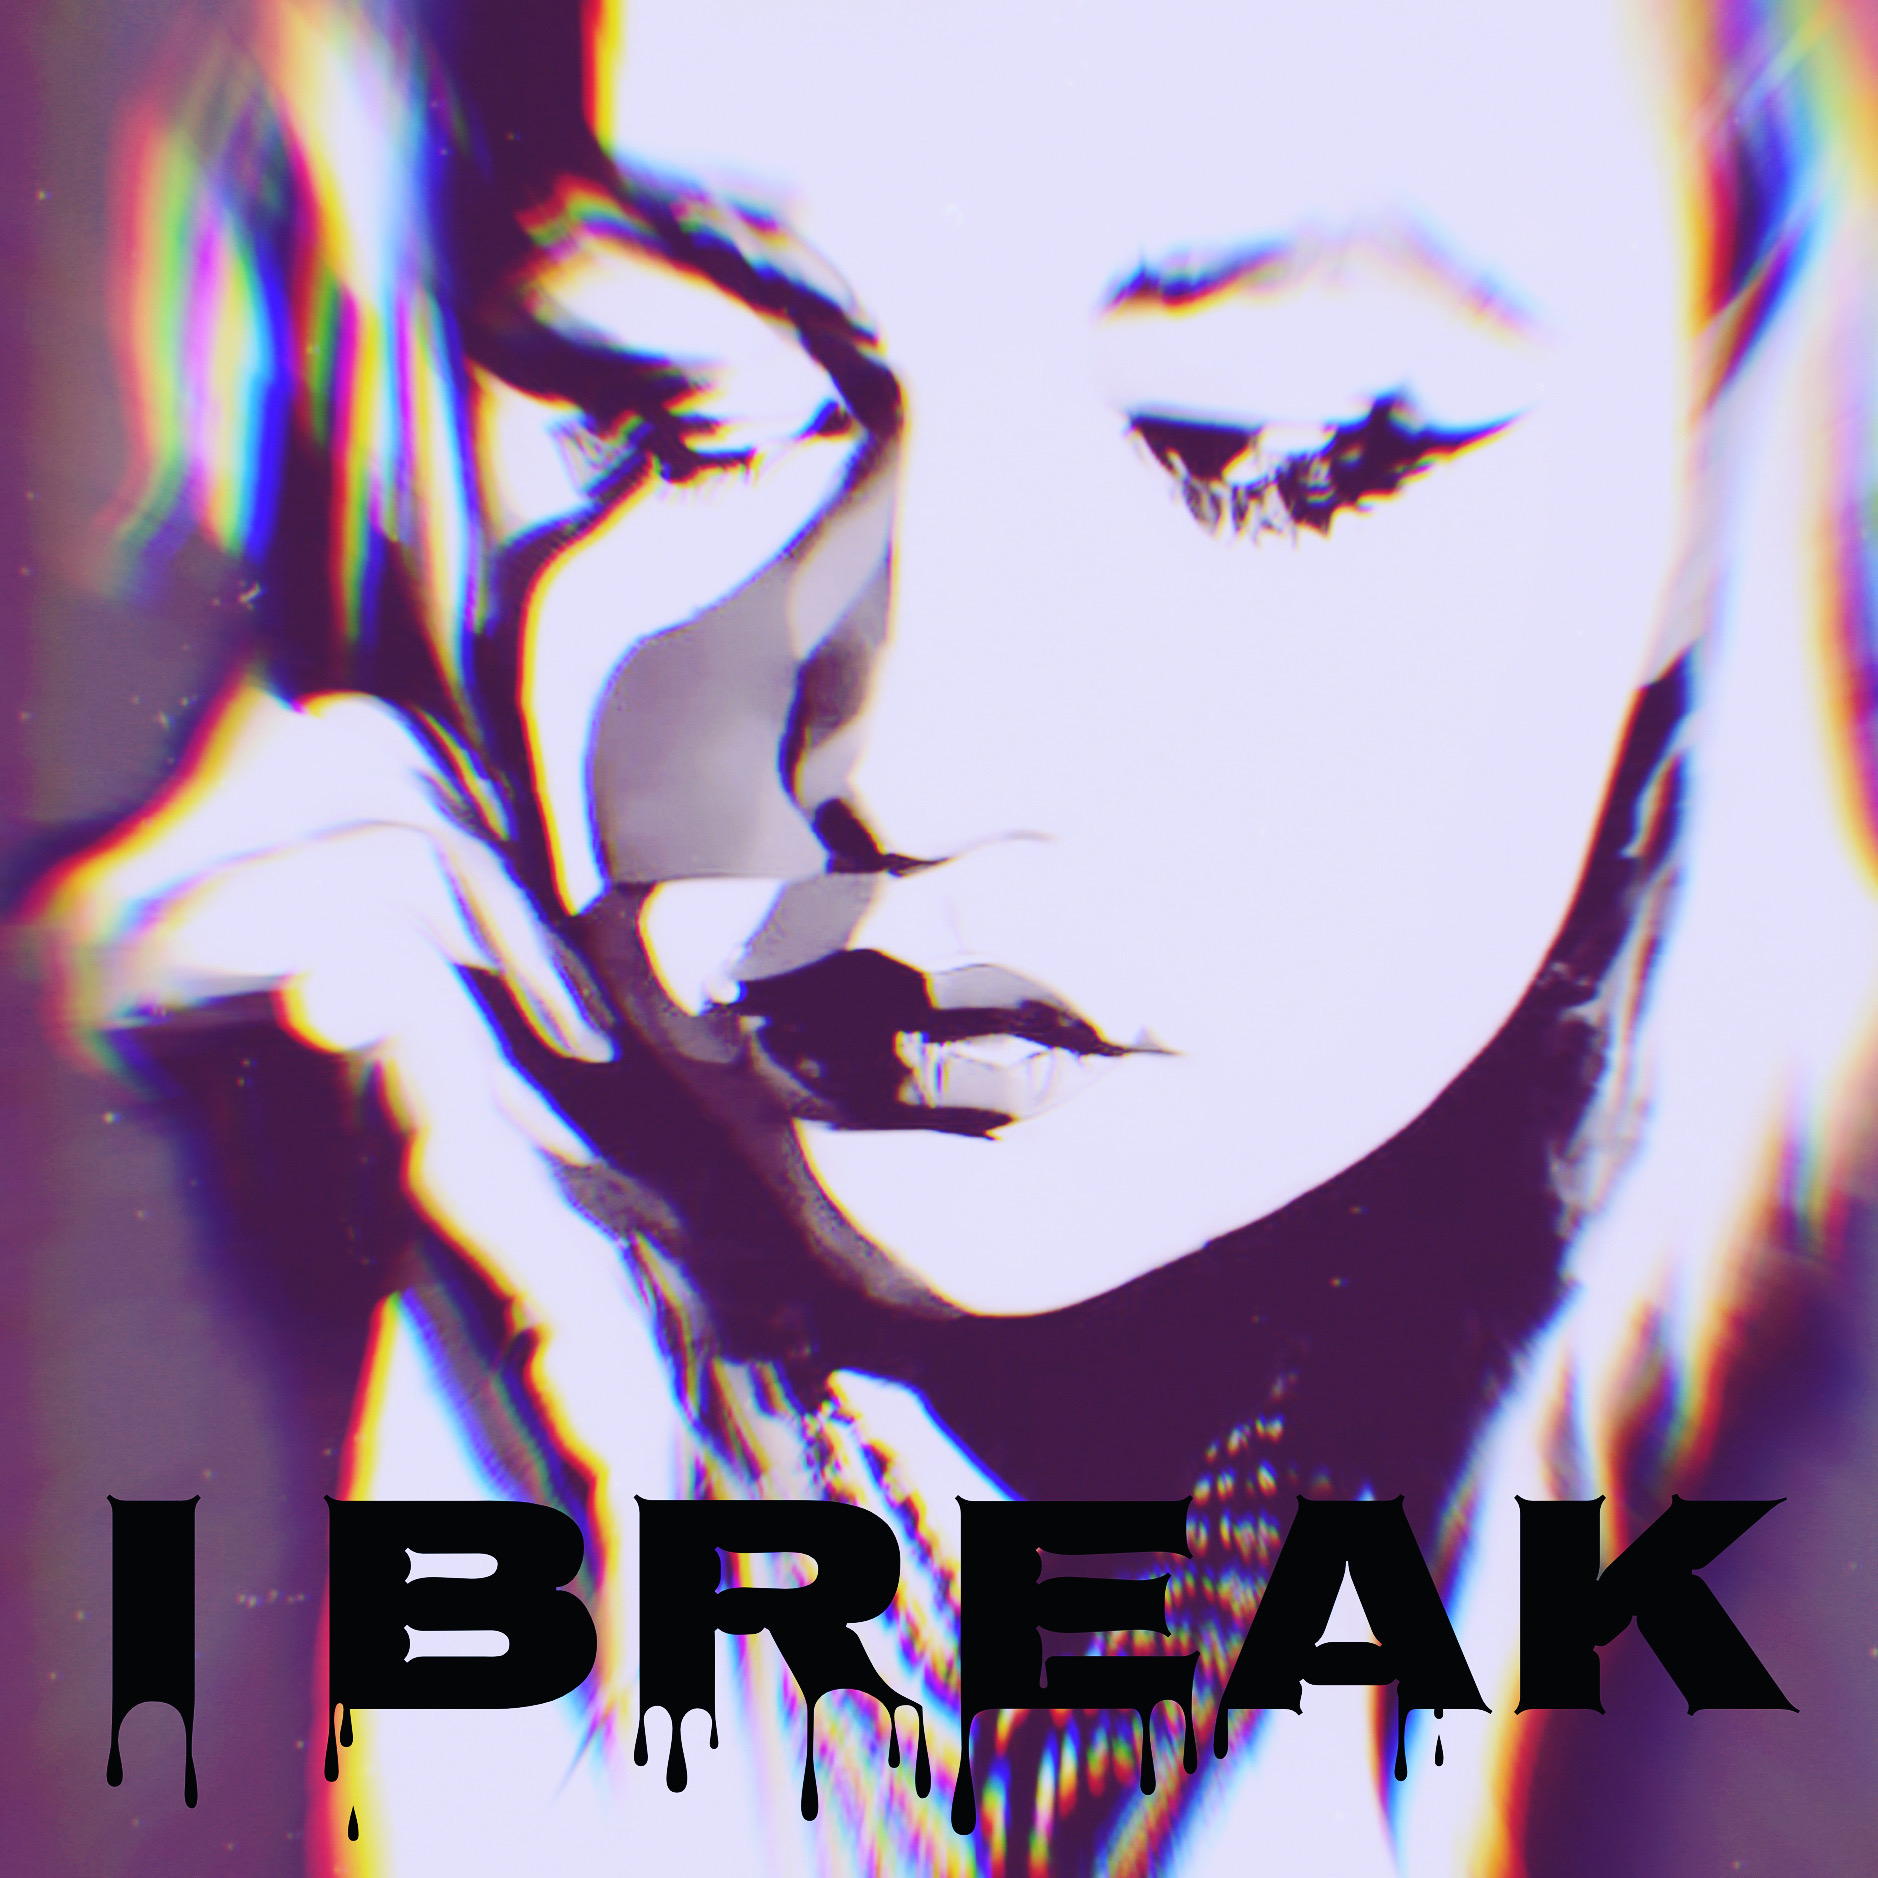 Clare Easdown – “I Break”